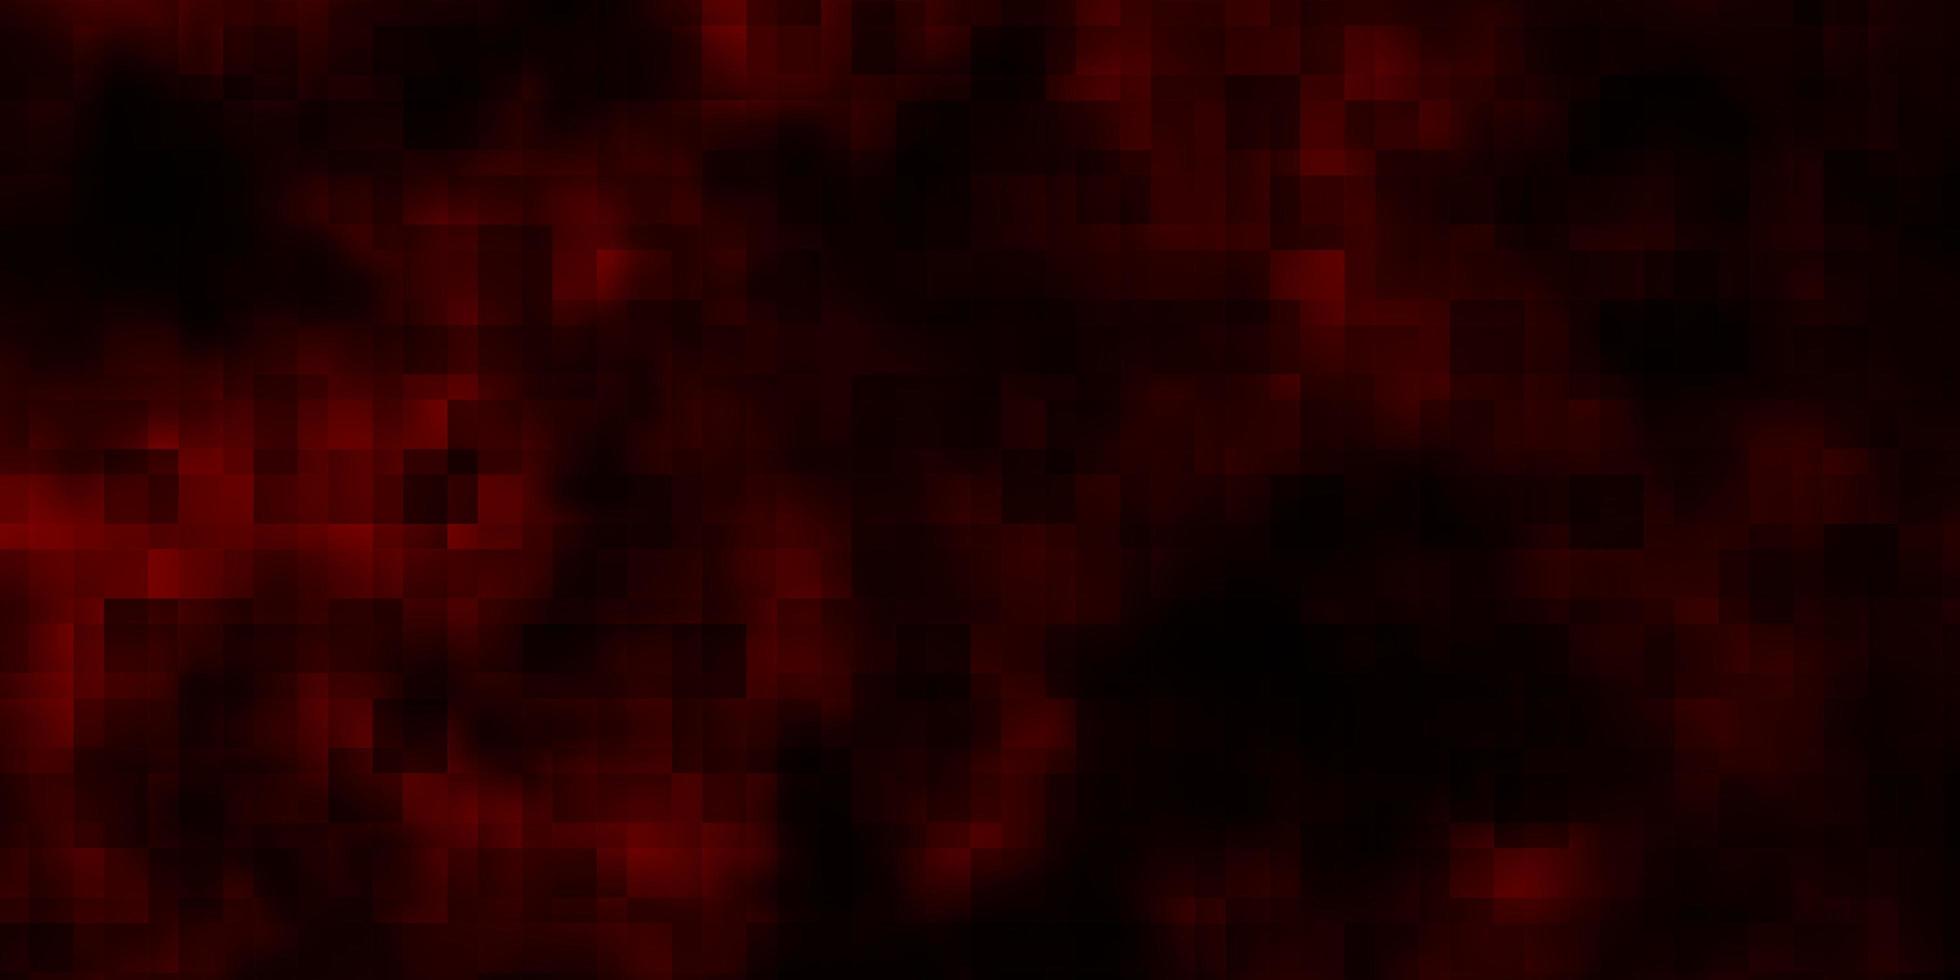 trama vettoriale rosso scuro in stile rettangolare